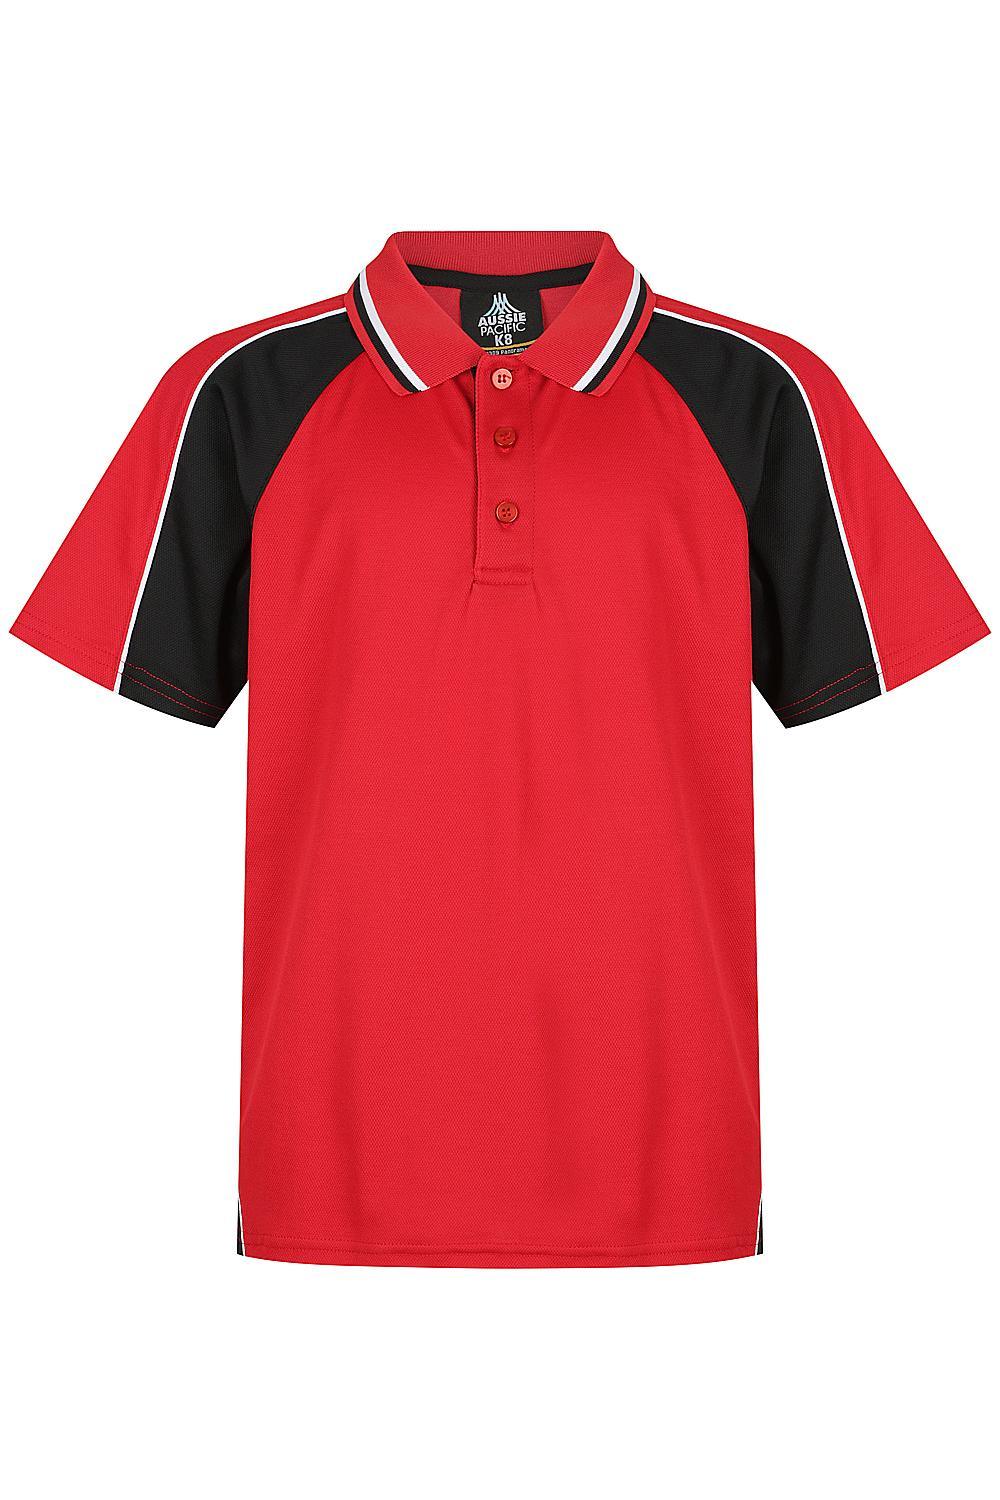 Custom Panorama Kids Shirt - Red/Black/White